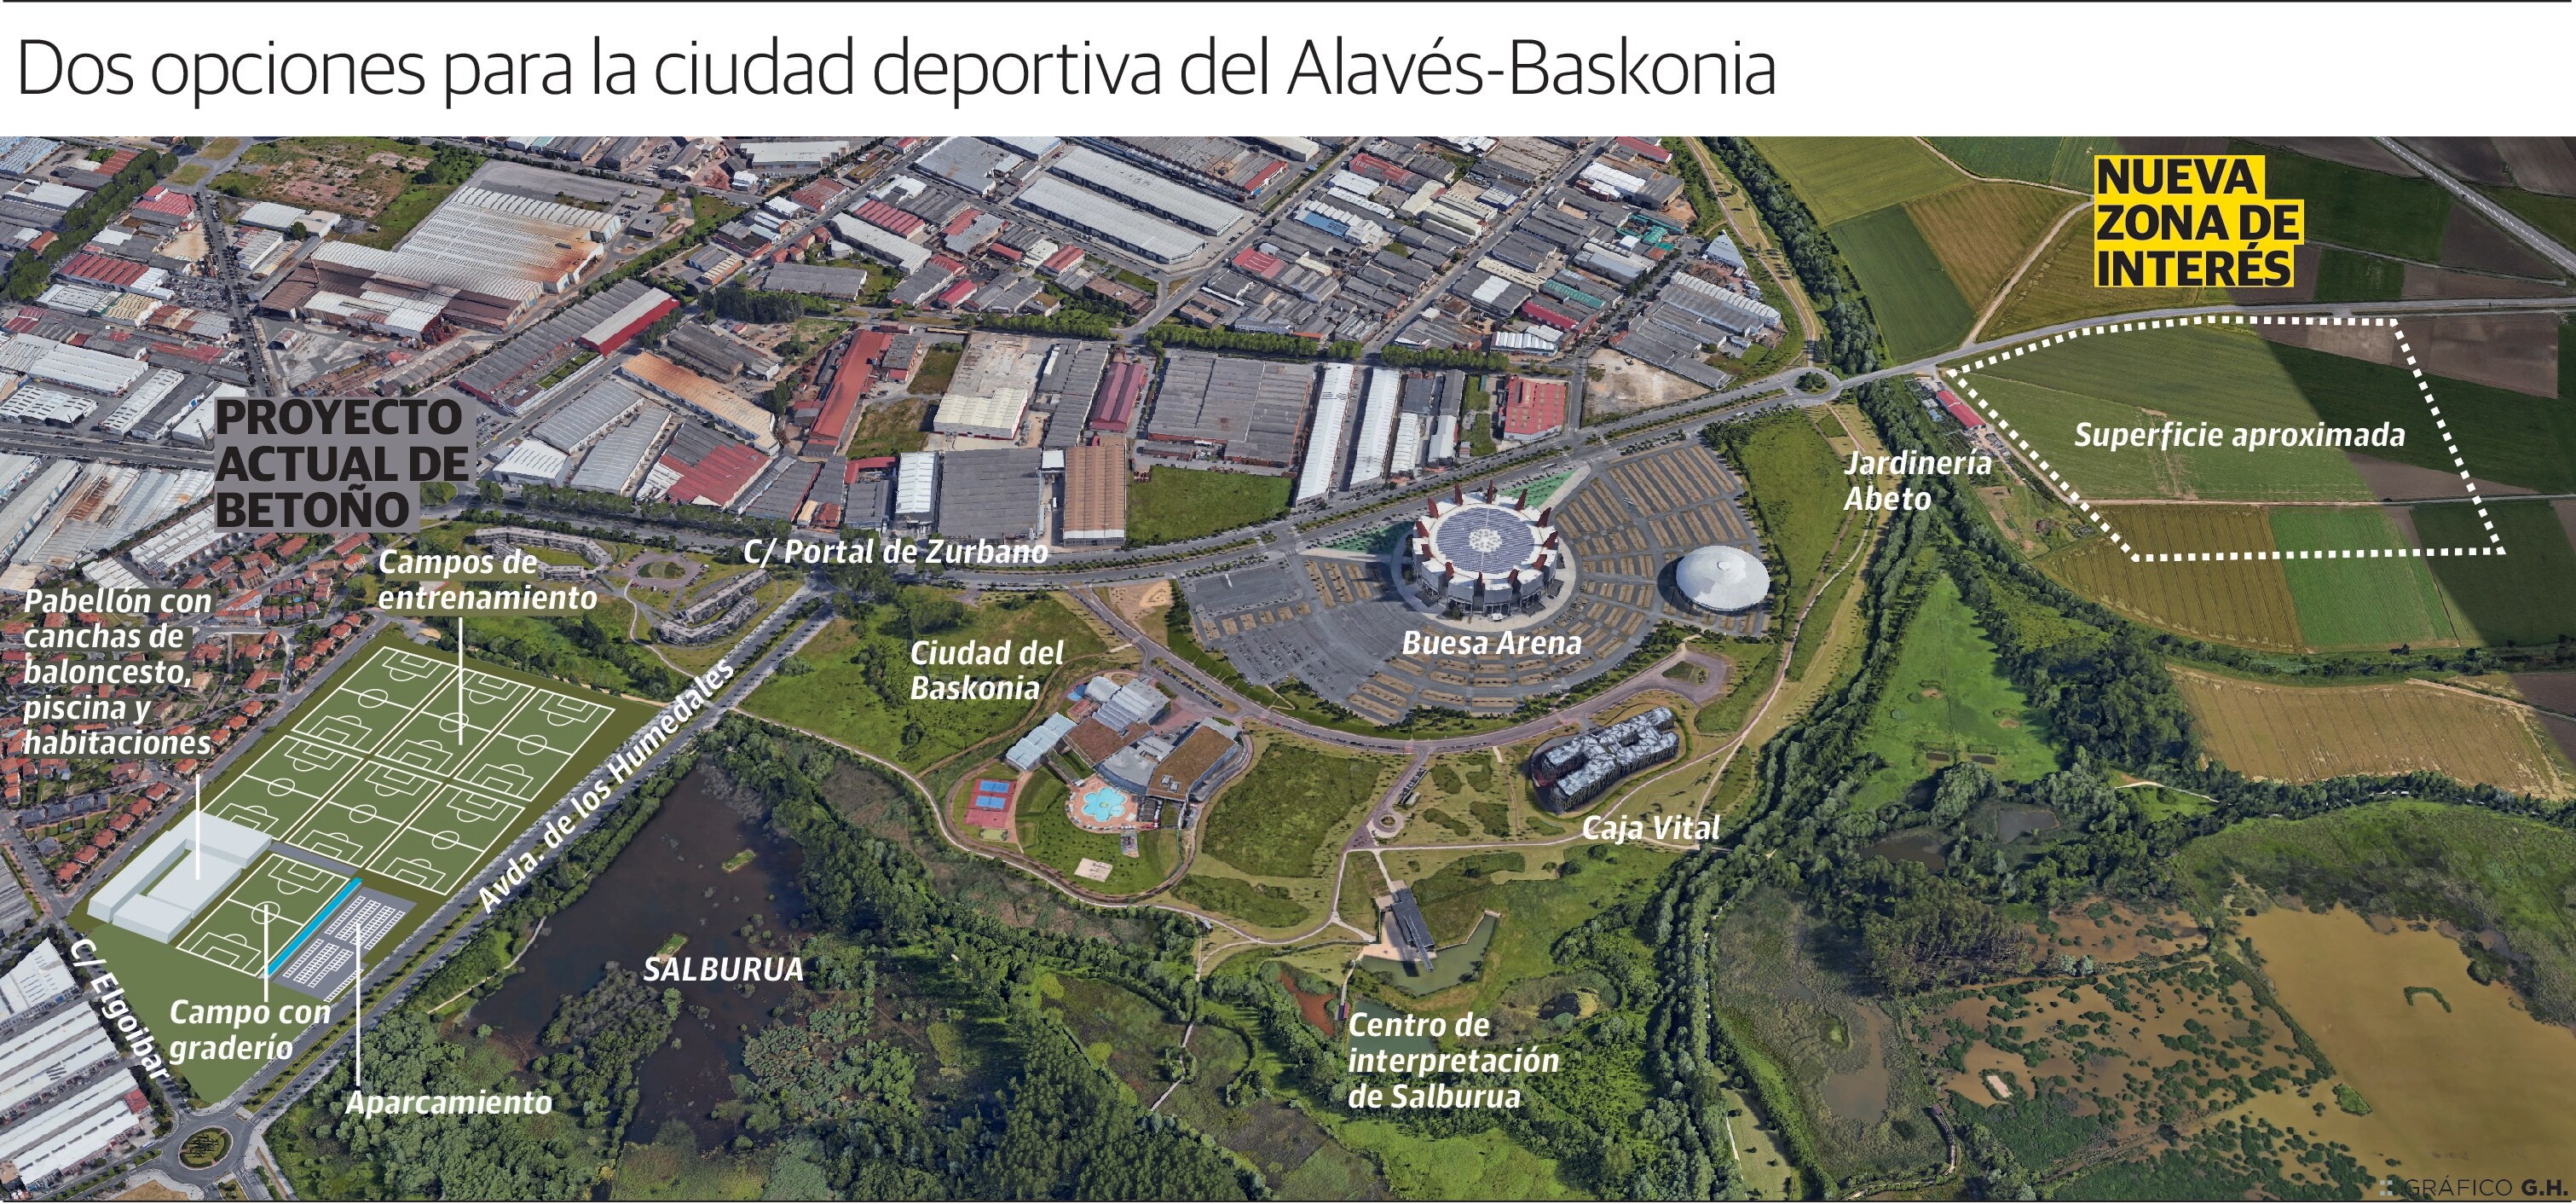 Dos opciones para la ciudad deportiva del Alavés - Baskonia